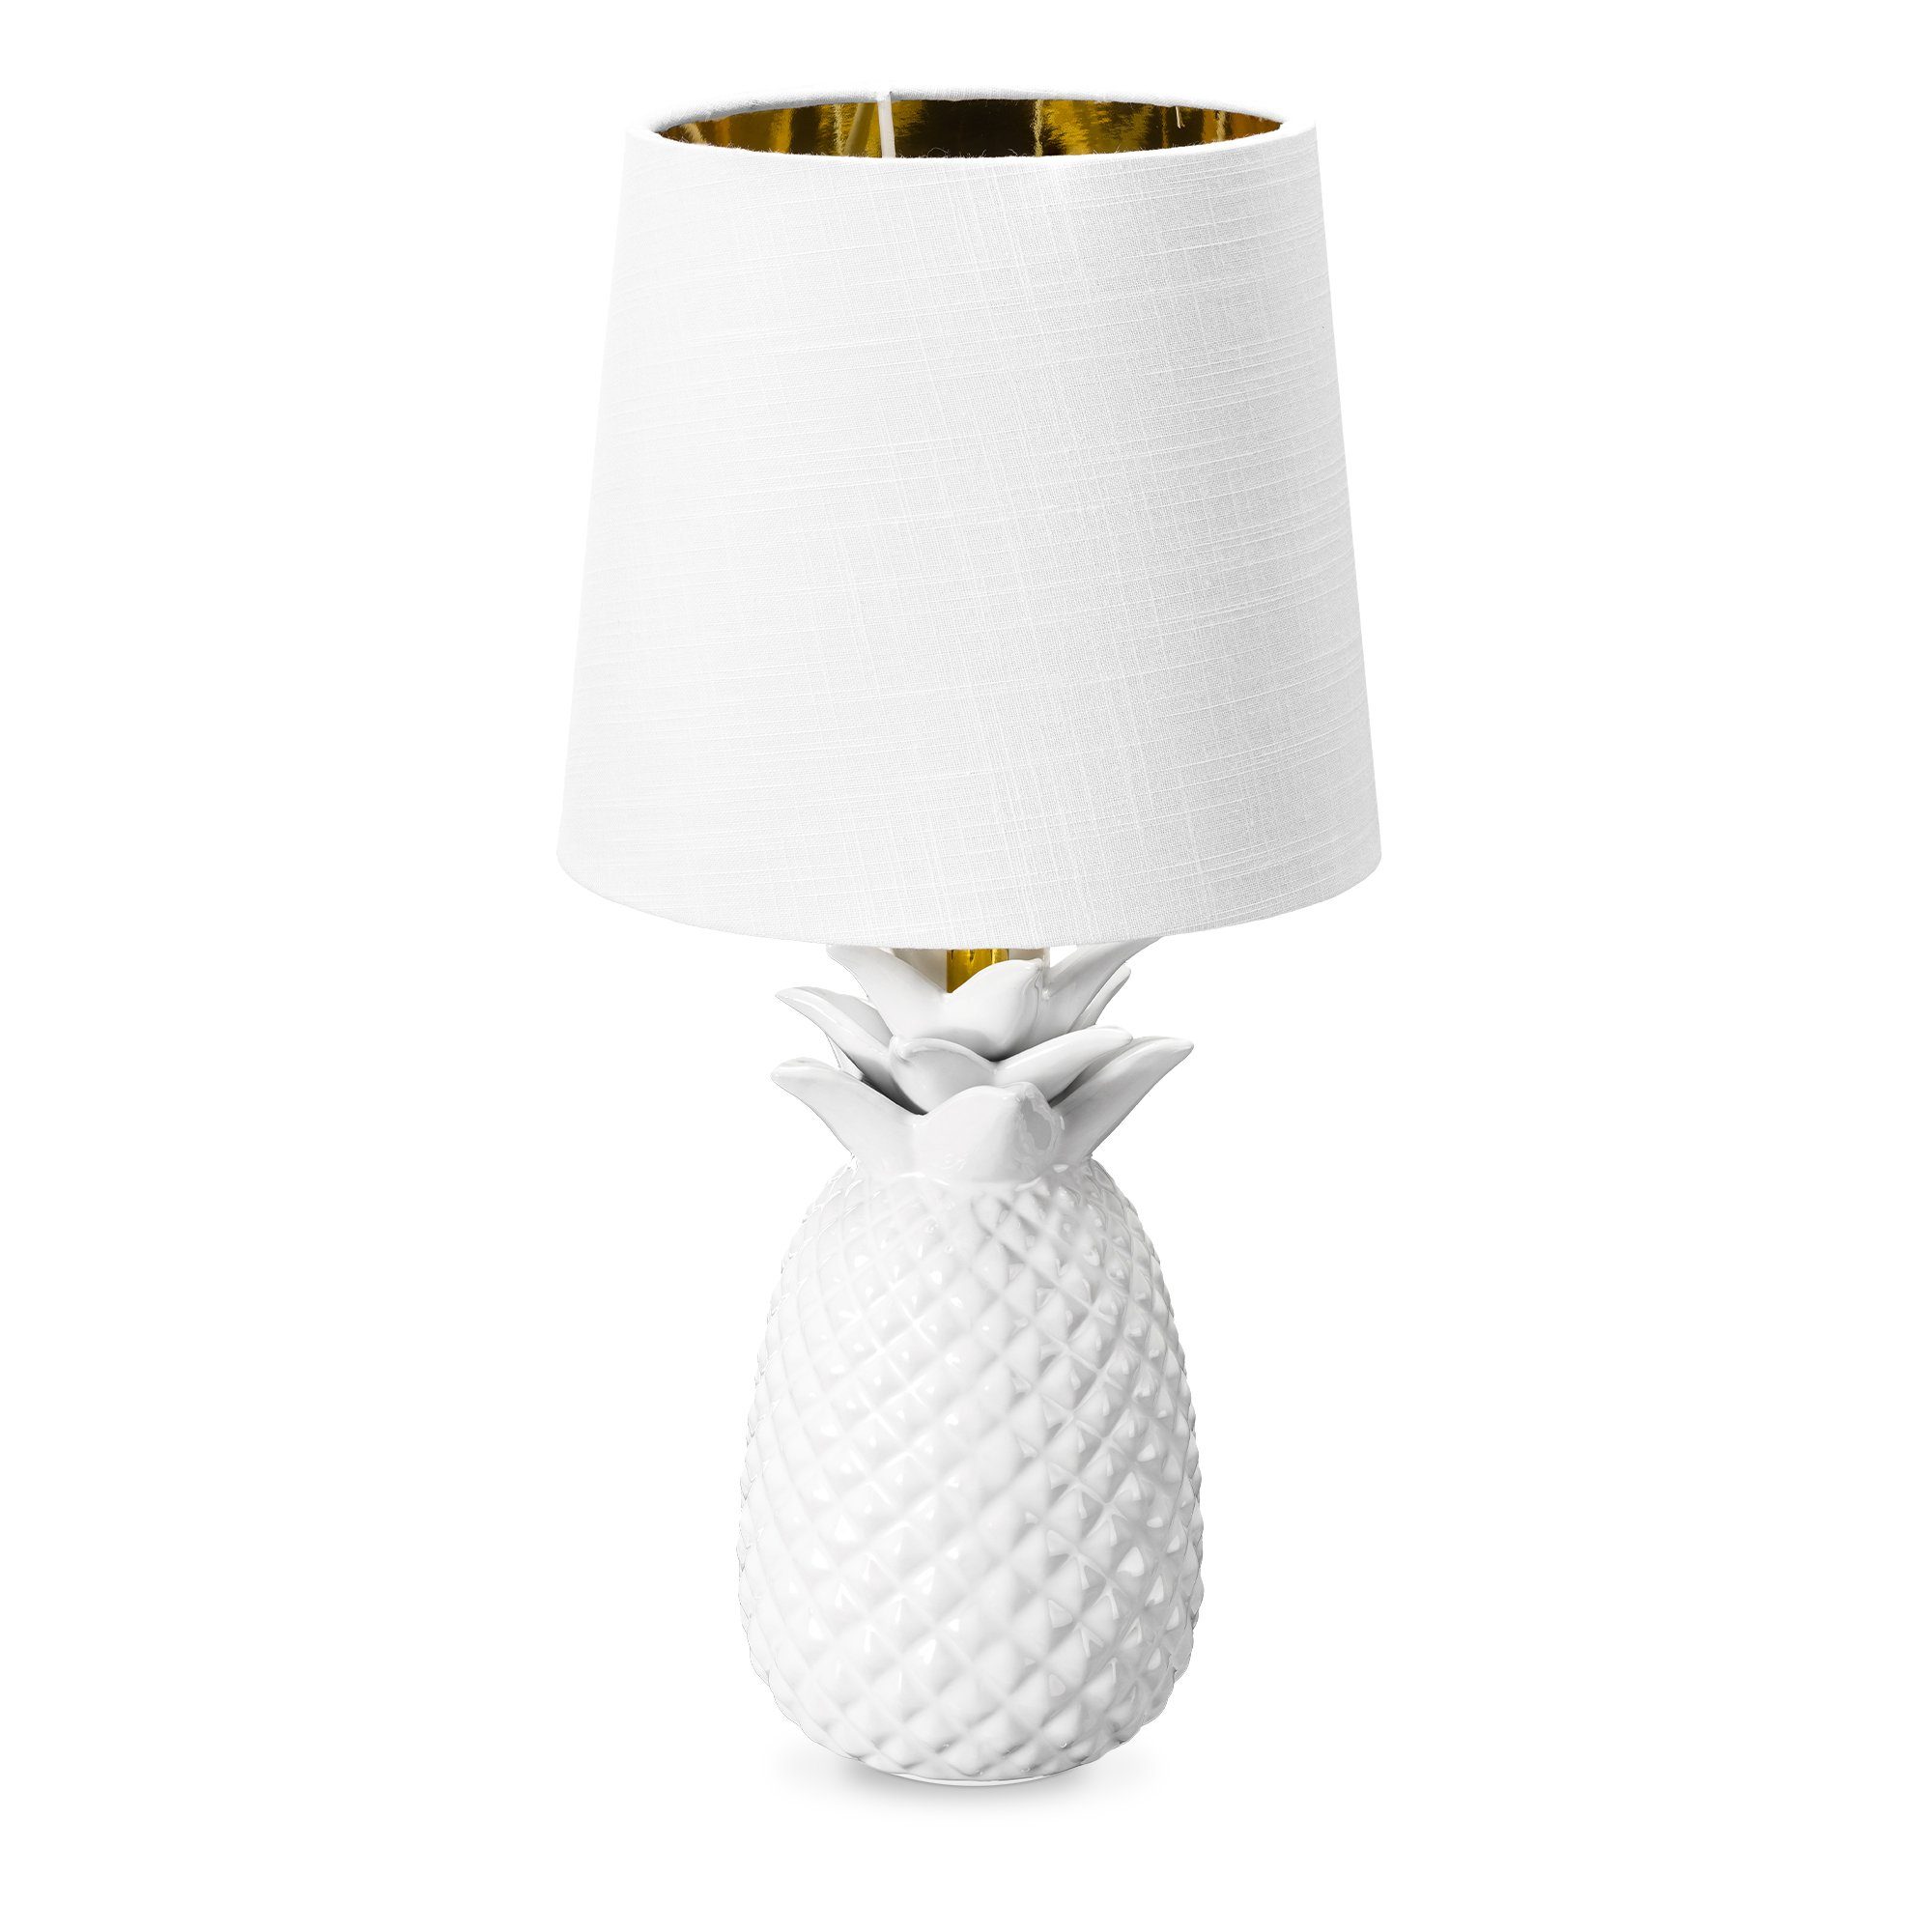 Navaris Tischleuchte Tischlampe Ananas Design - 35cm hoch - Dekolampe mit E14 Gewinde Weiß